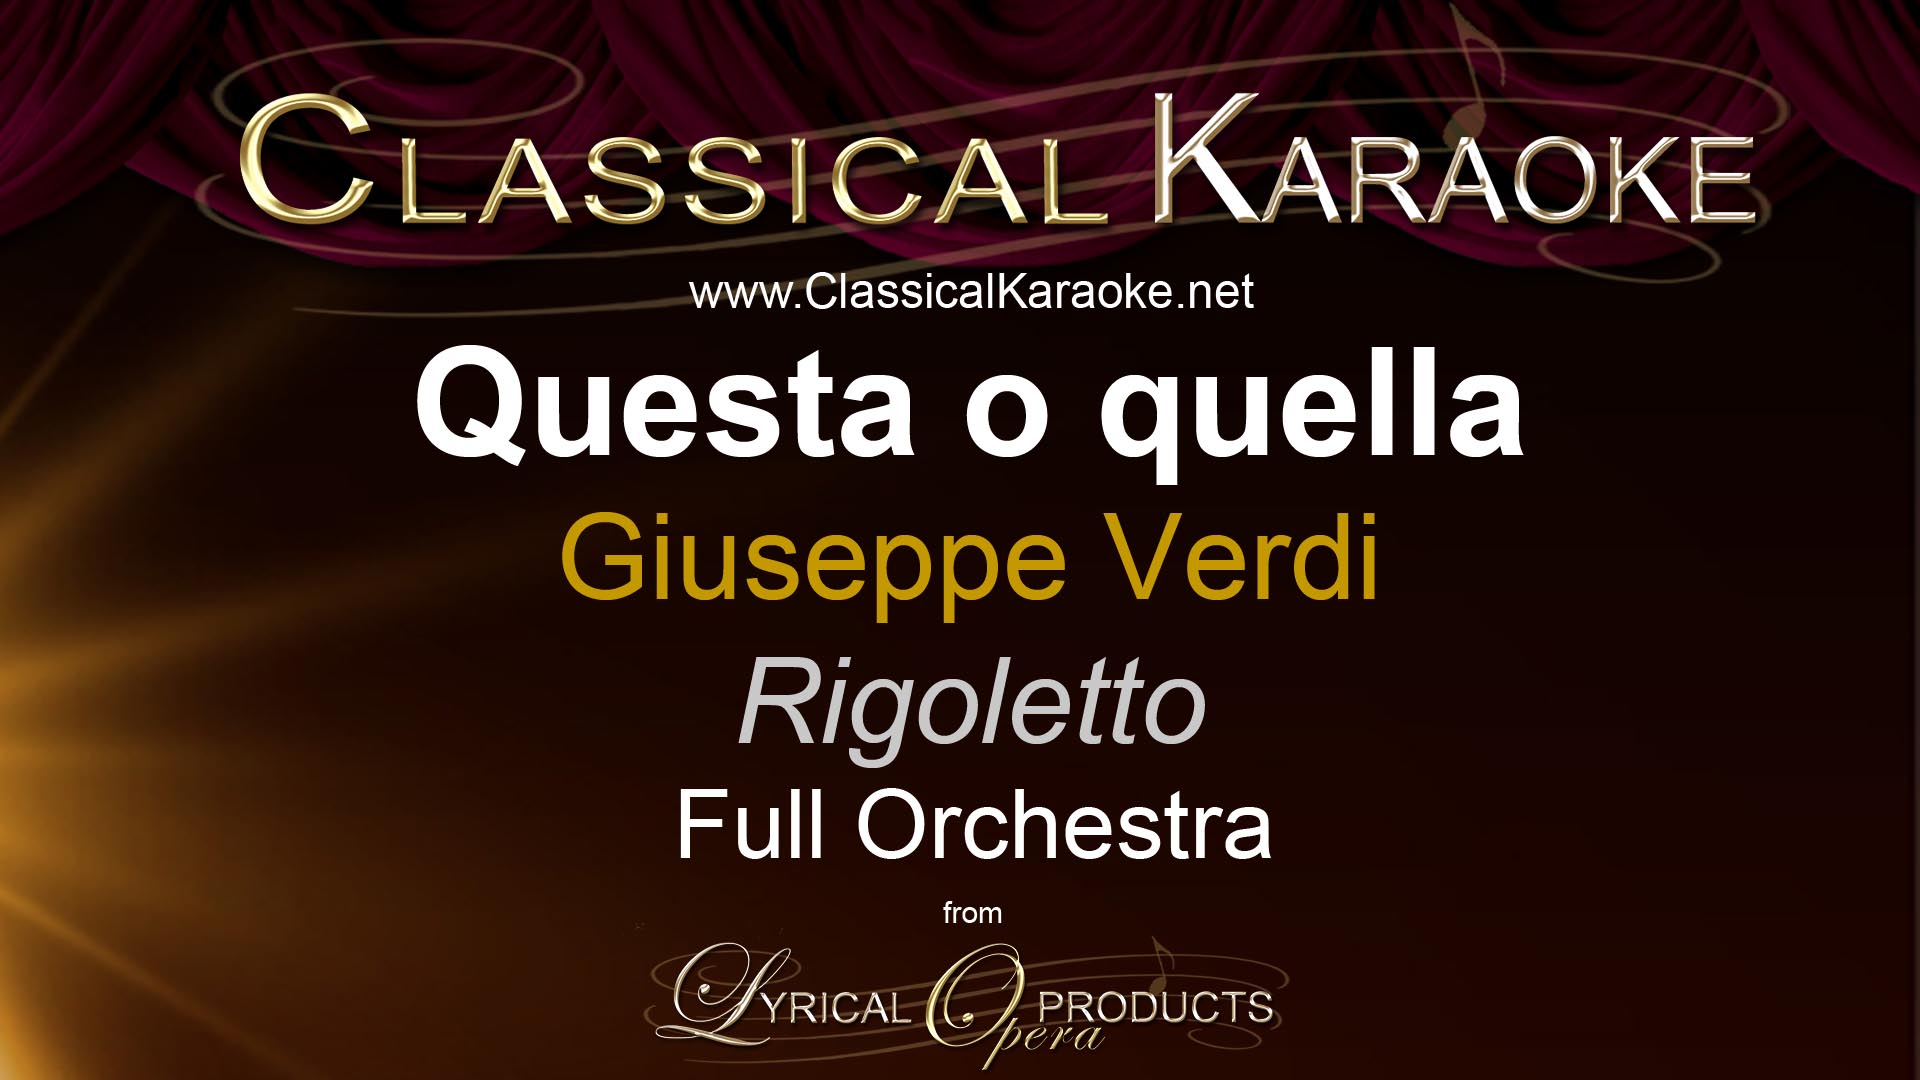 Questa o quella, from Rigoletto, Full Orchestral Accompaniment (karaoke) track